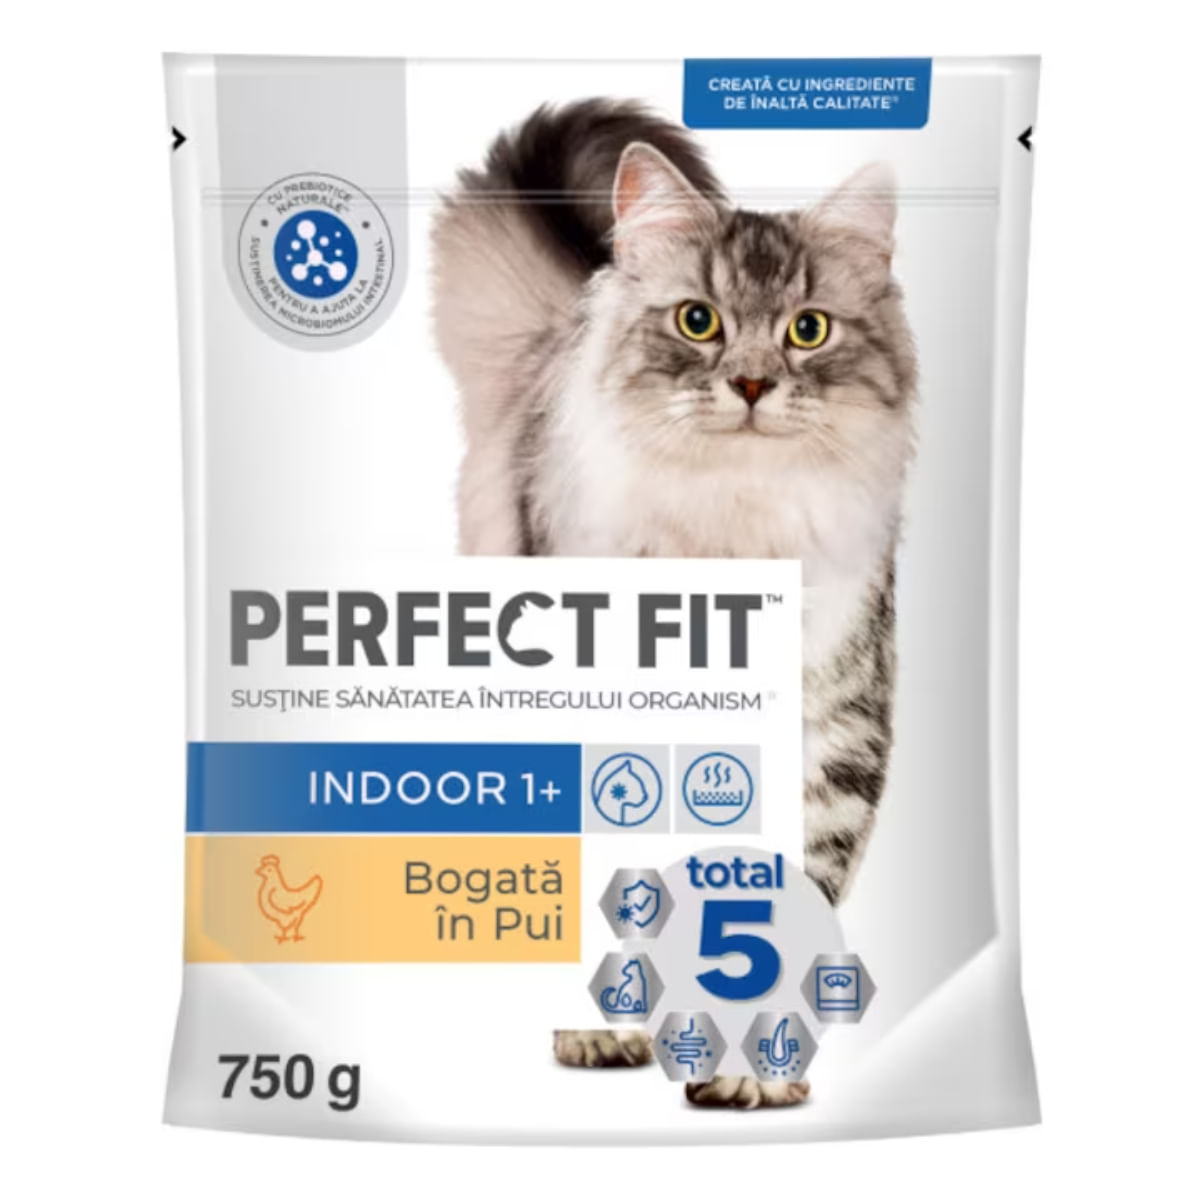 PERFECT FIT Cat Indoor 1+, Pui, hrană uscată pisici, 750g